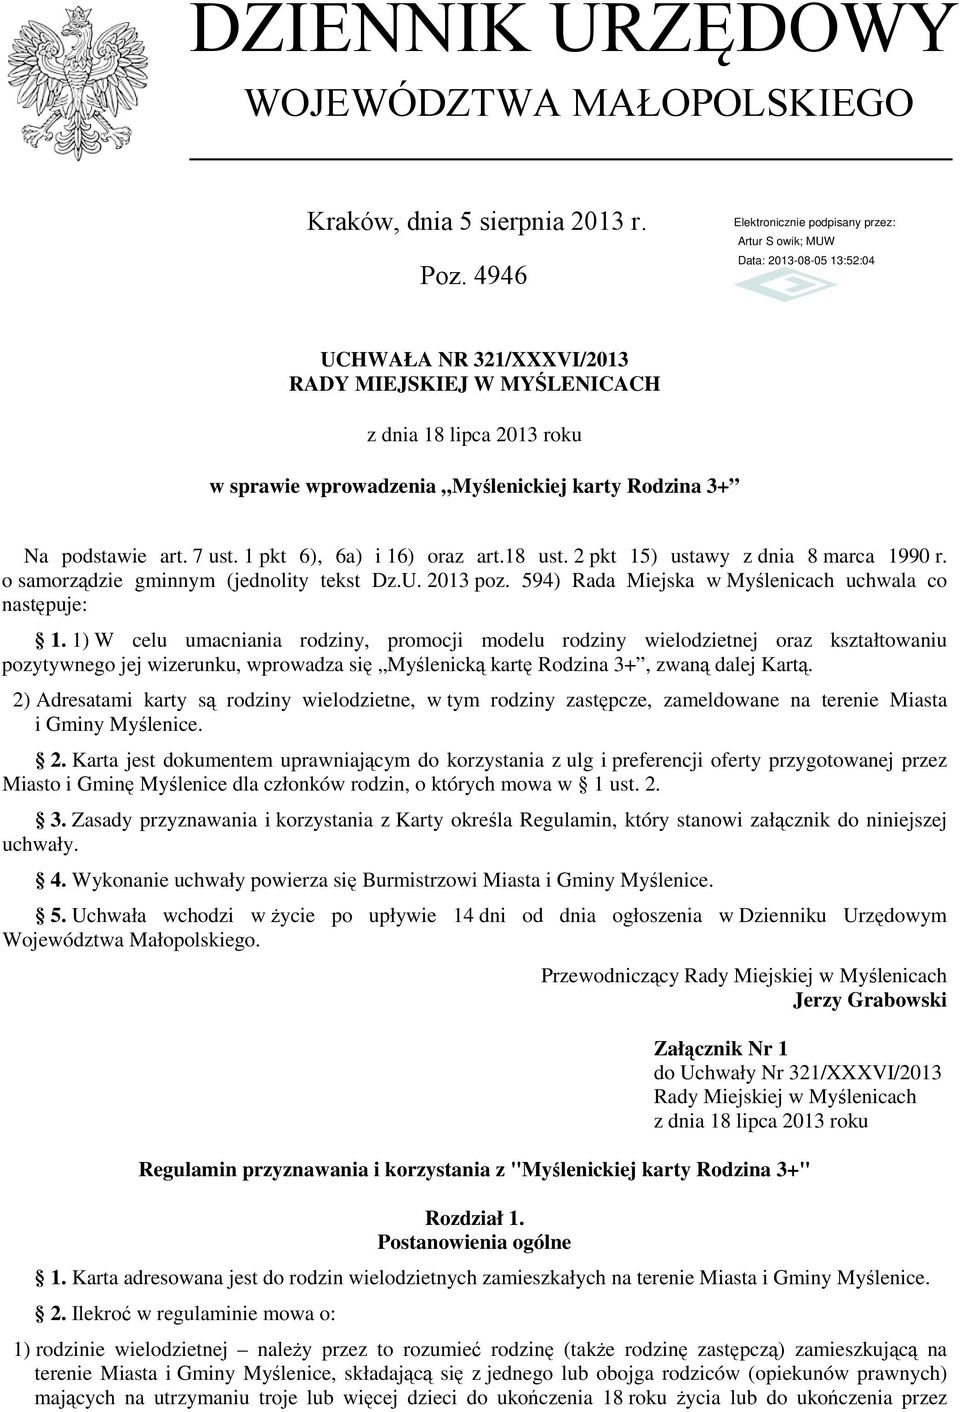 2 pkt 15) ustawy z dnia 8 marca 1990 r. o samorządzie gminnym (jednolity tekst Dz.U. 2013 poz. 594) Rada Miejska w Myślenicach uchwala co następuje: 1.